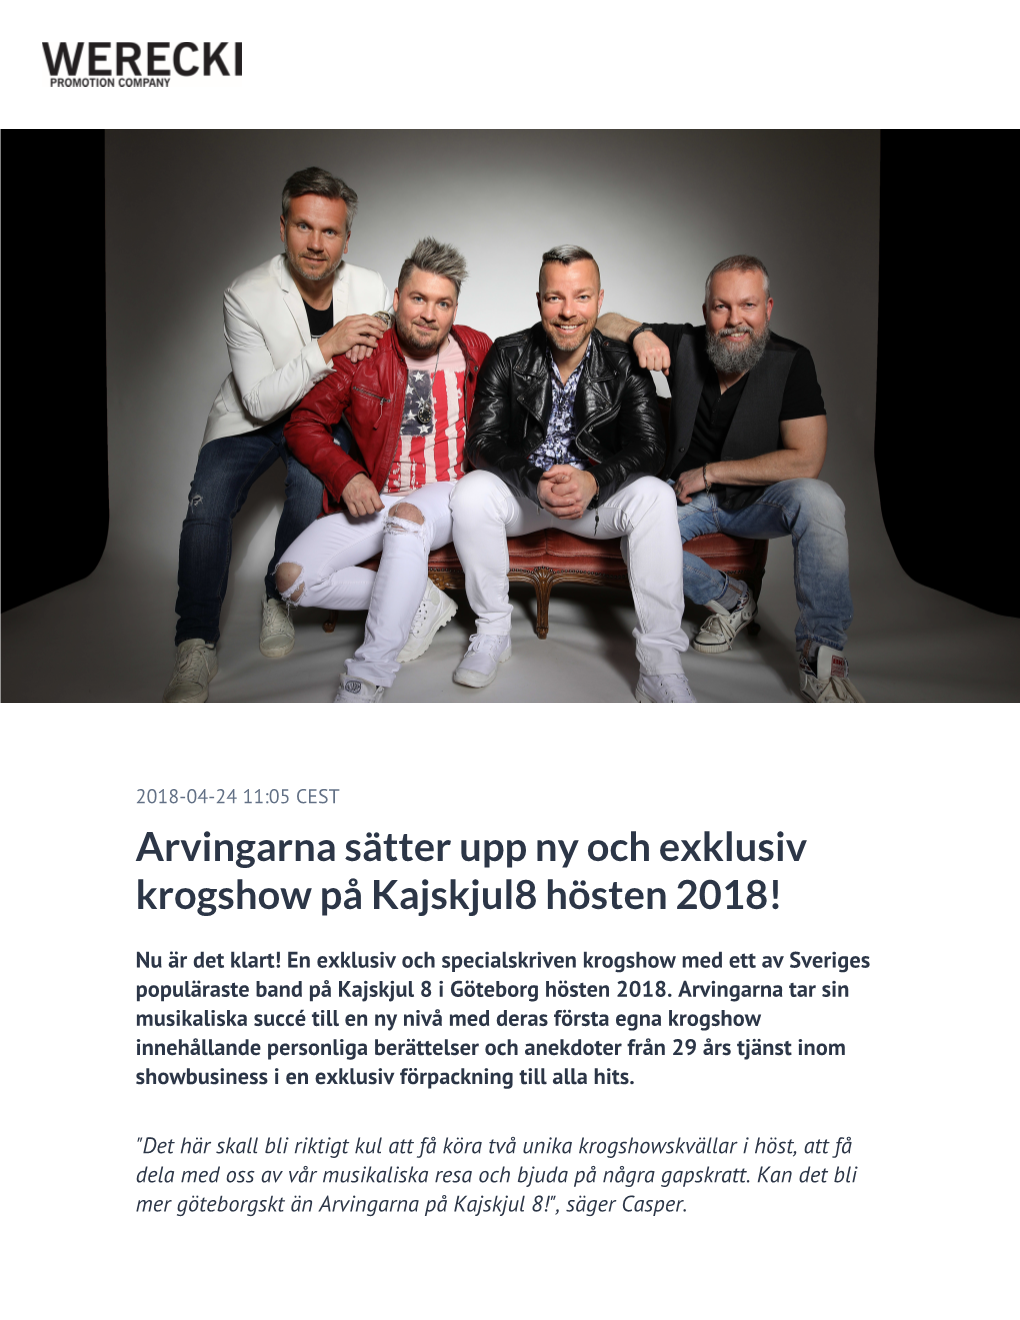 Arvingarna Sätter Upp Ny Och Exklusiv Krogshow På Kajskjul8 Hösten 2018!